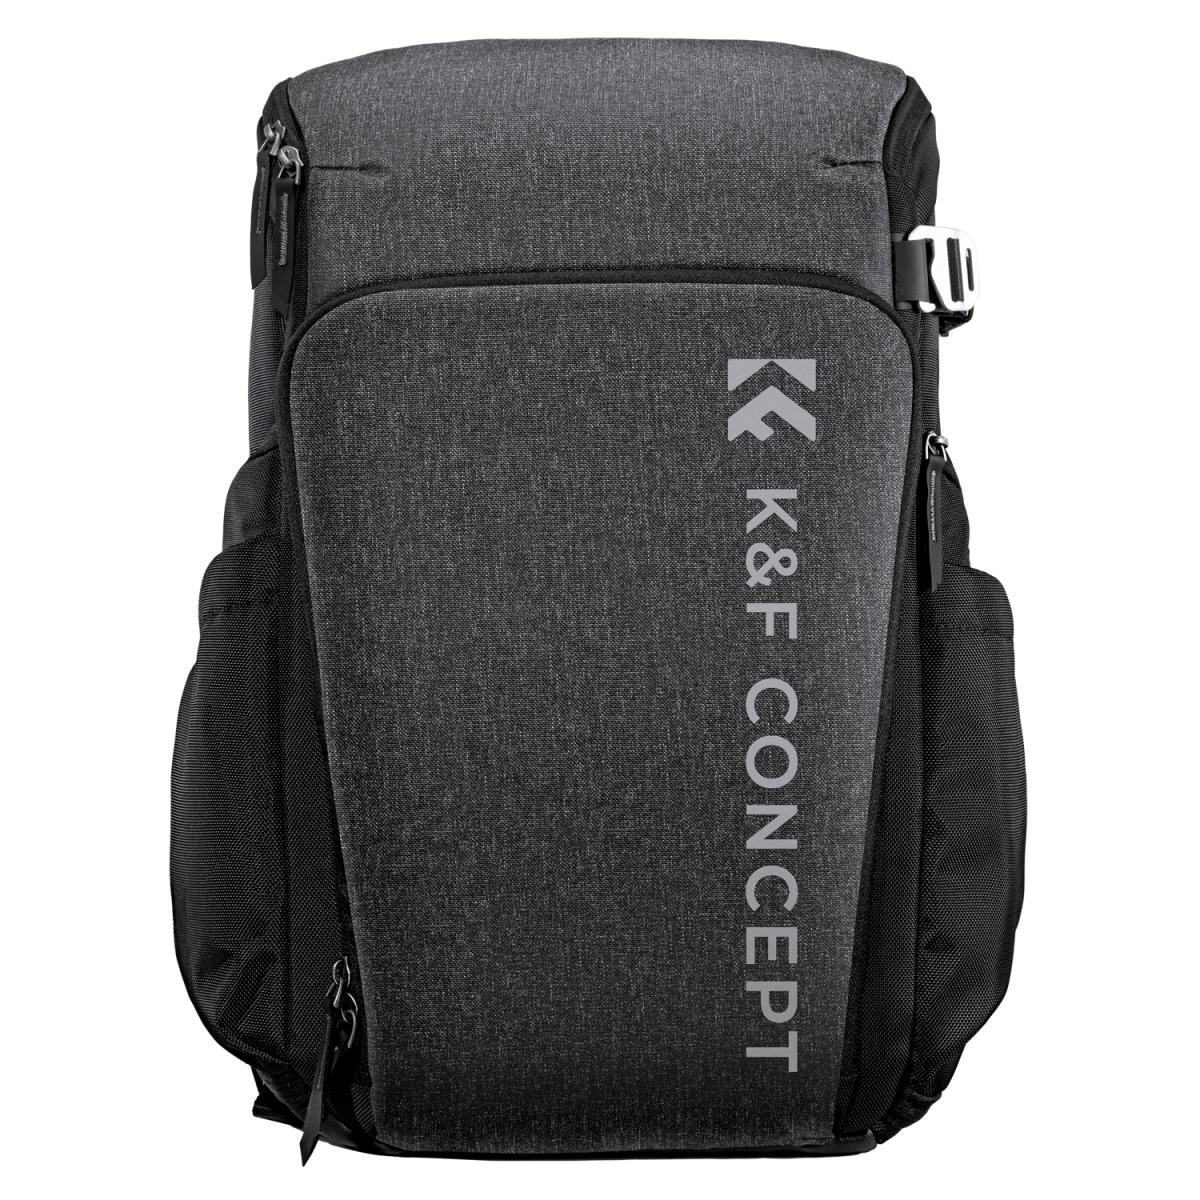 K&F Concept Sac à dos d'appareil photo reflex numérique pour la